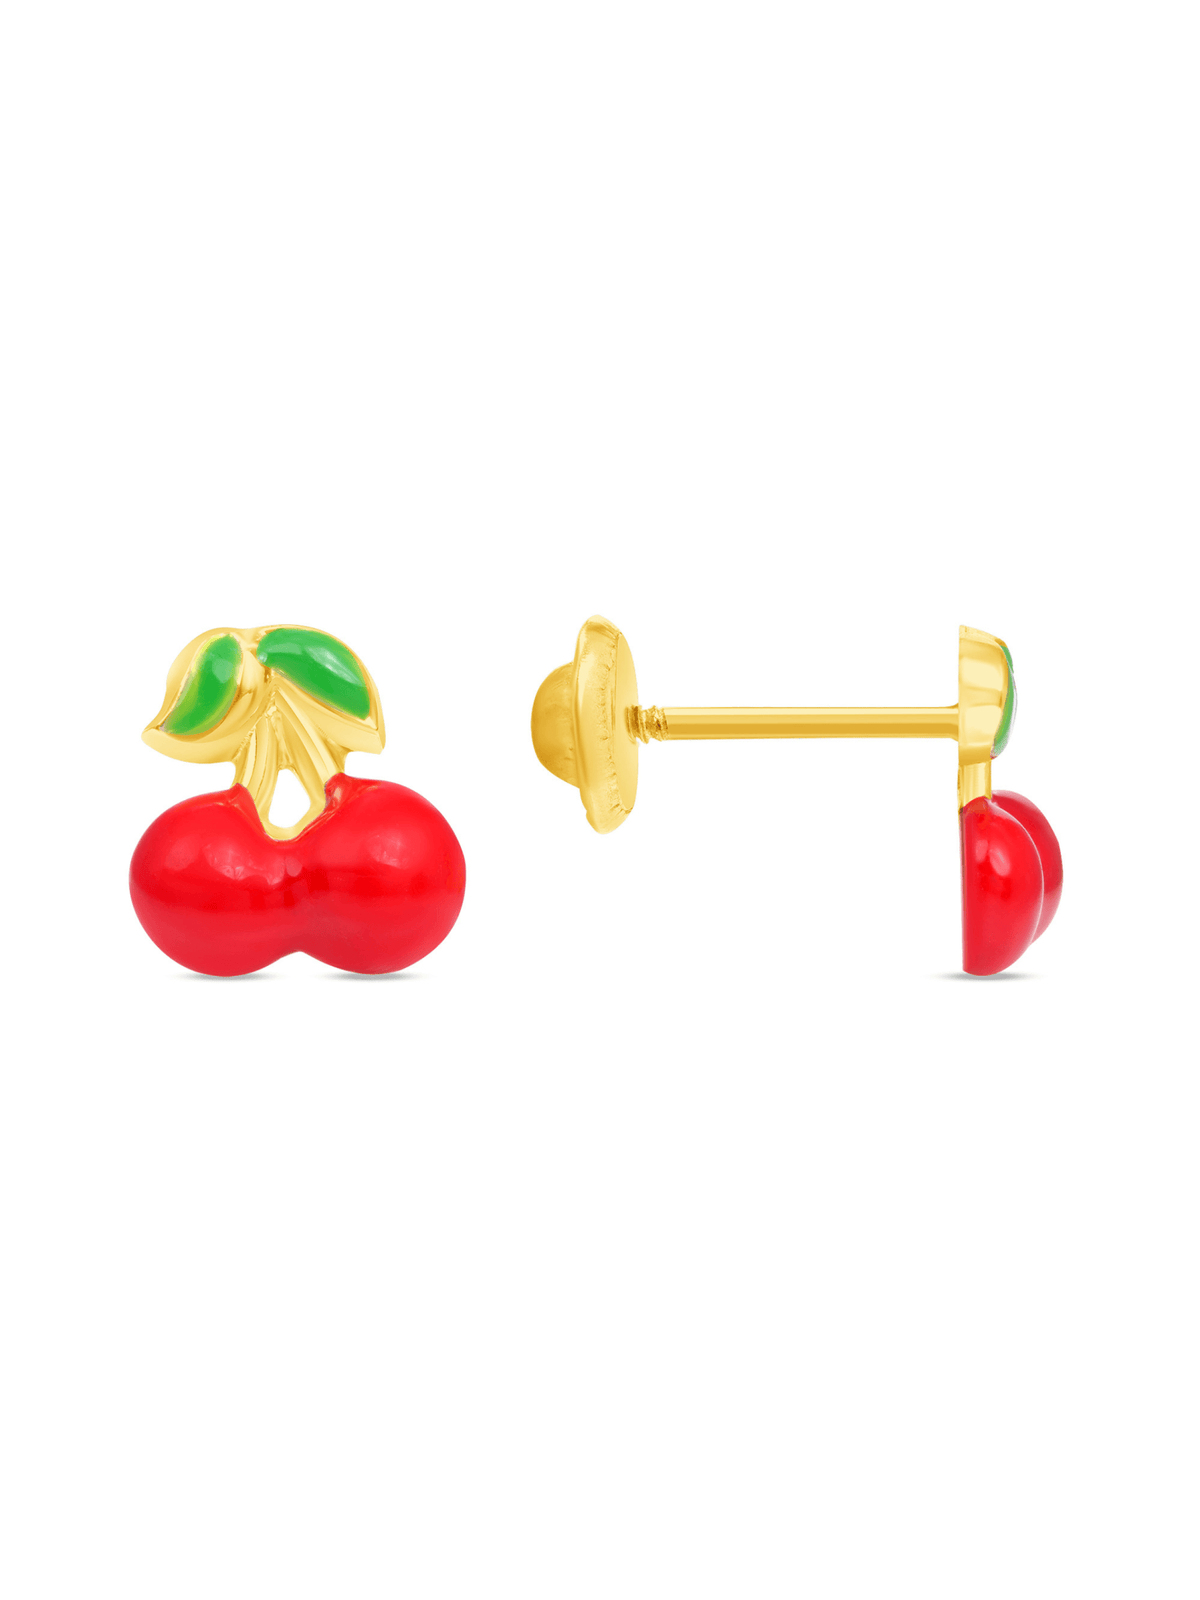 Kid cherry earrings on white background